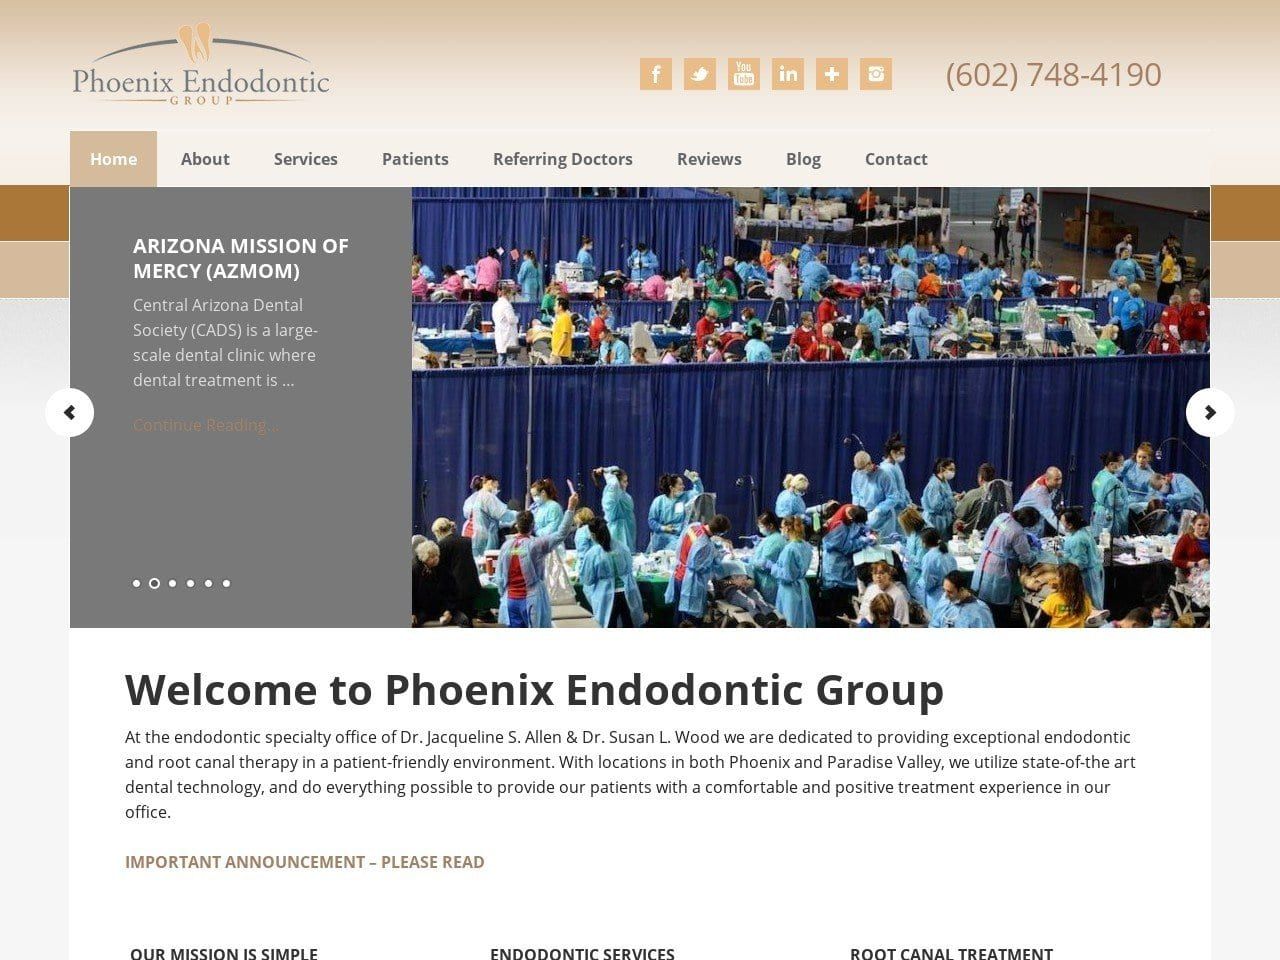 Phoenix Endodontic Group Website Screenshot from phoenixendodontist.com